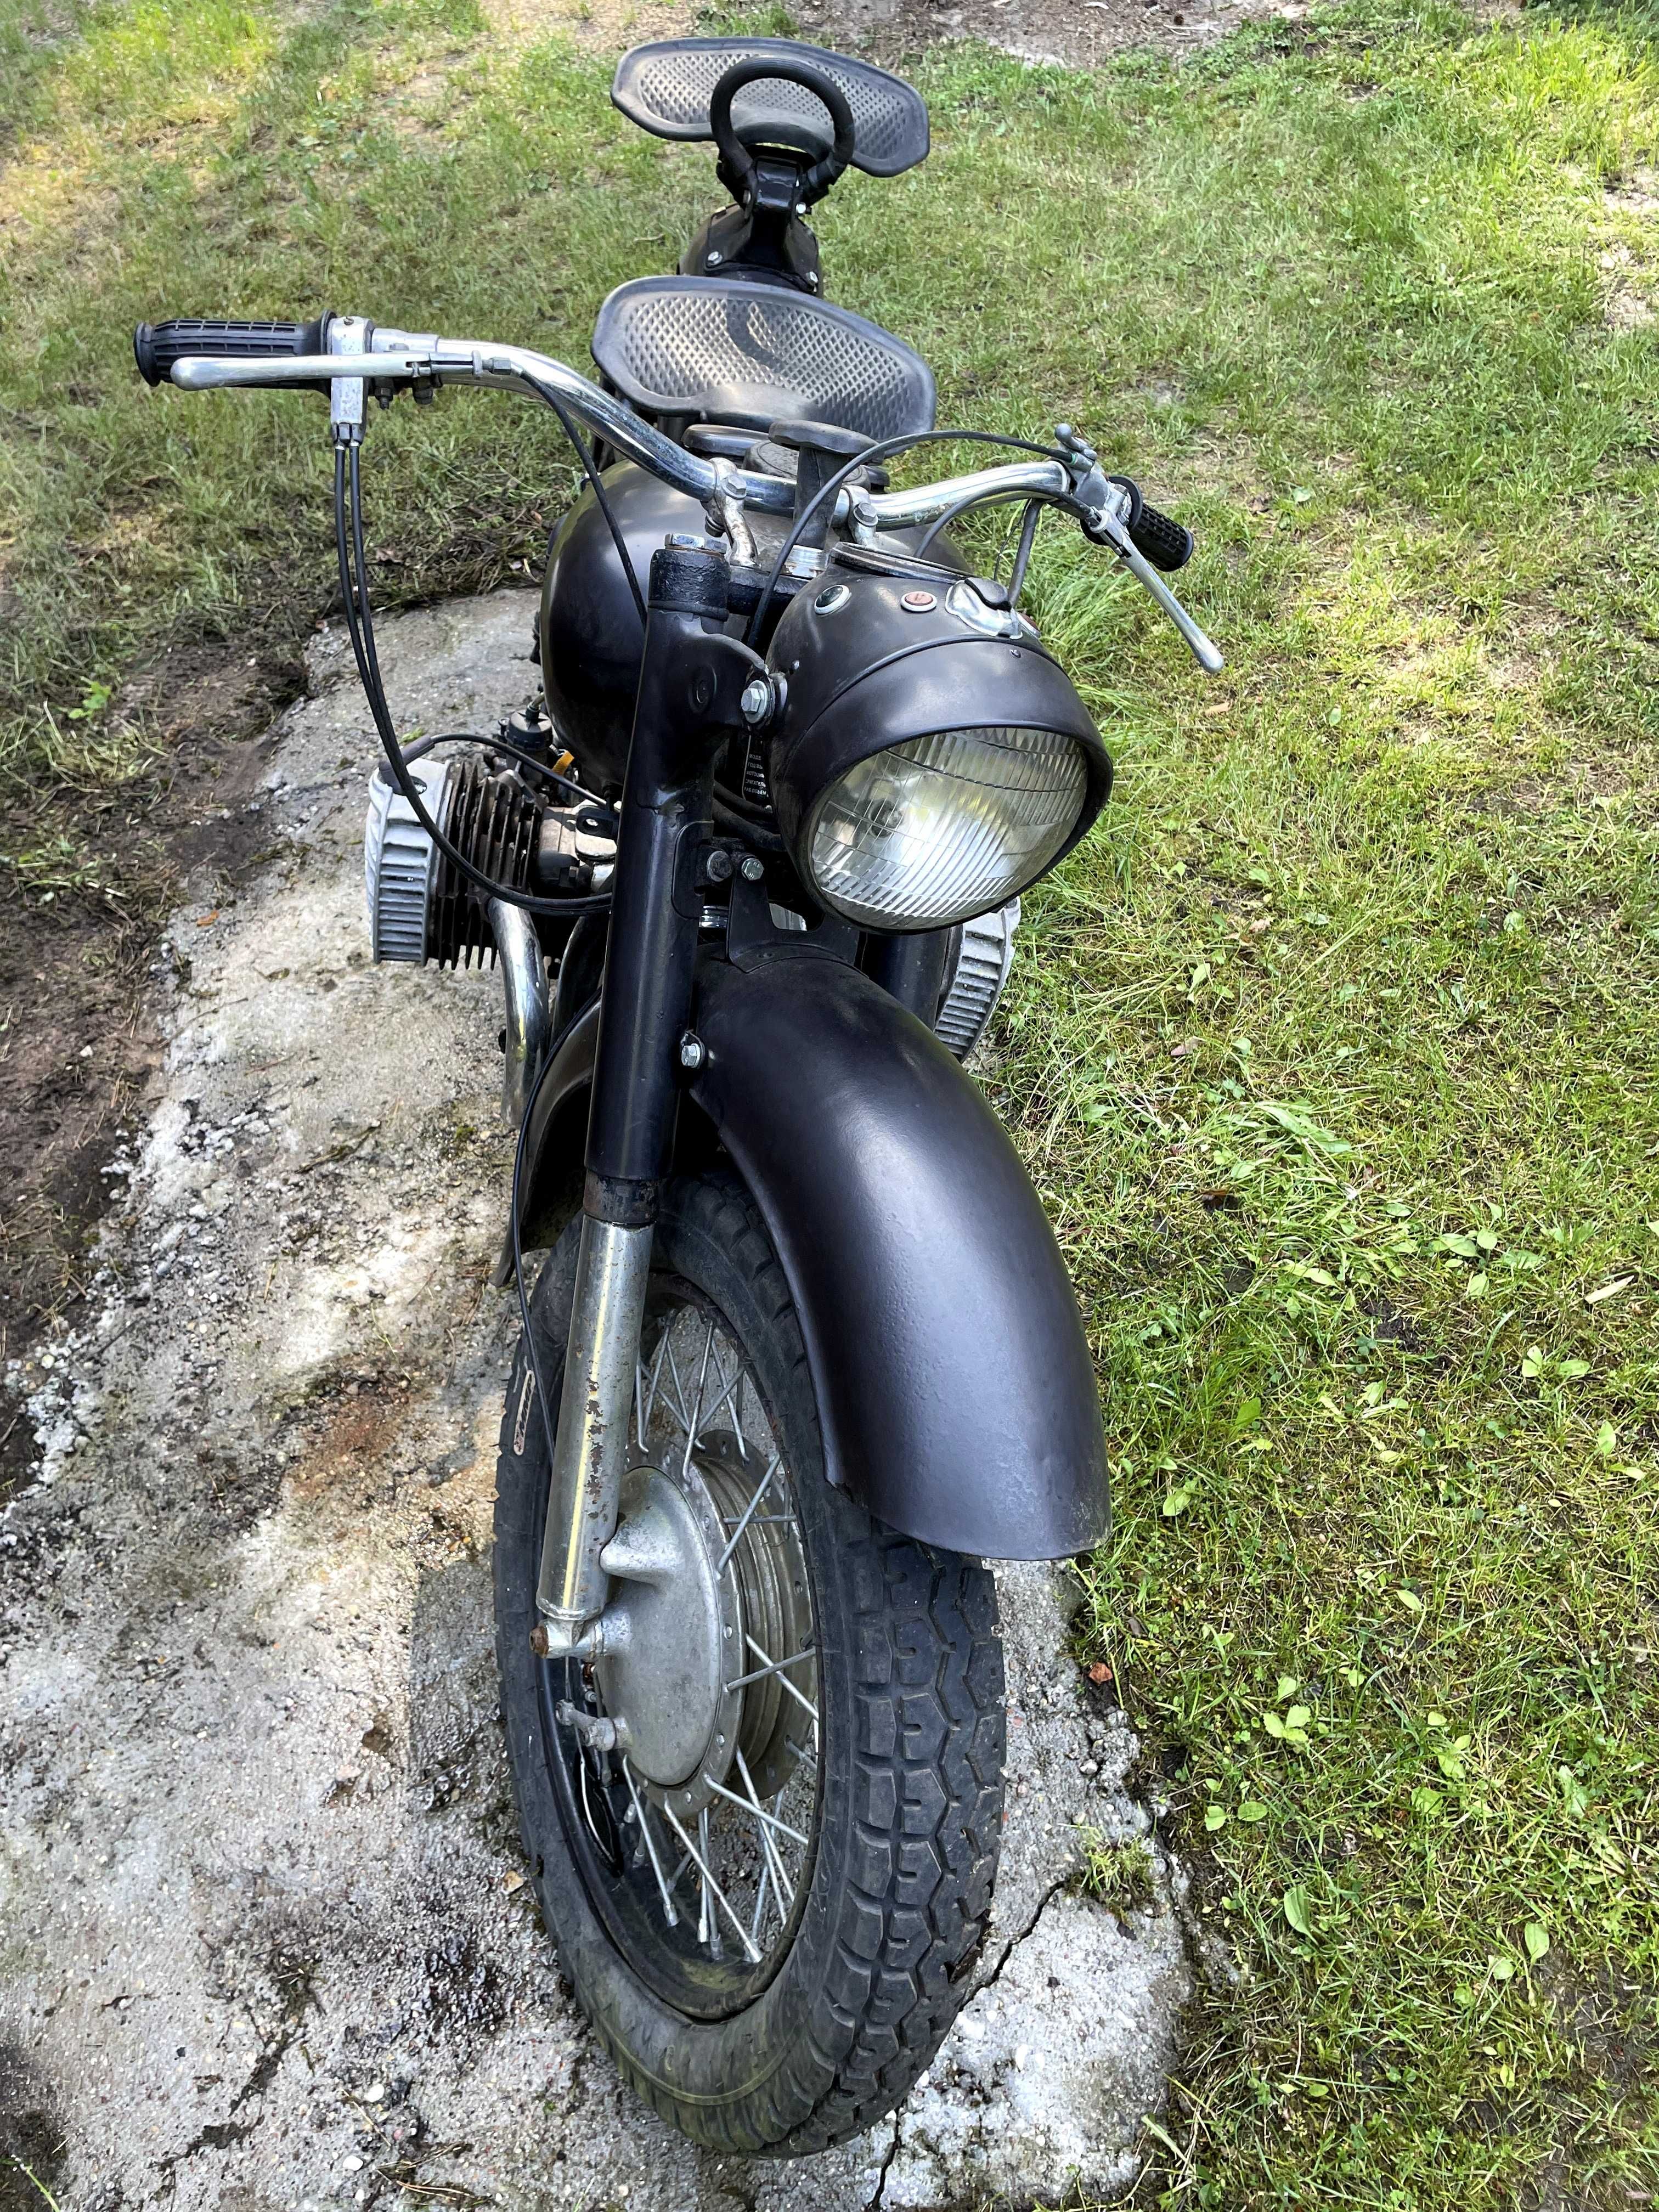 Motocykl k750 zarejestrowany